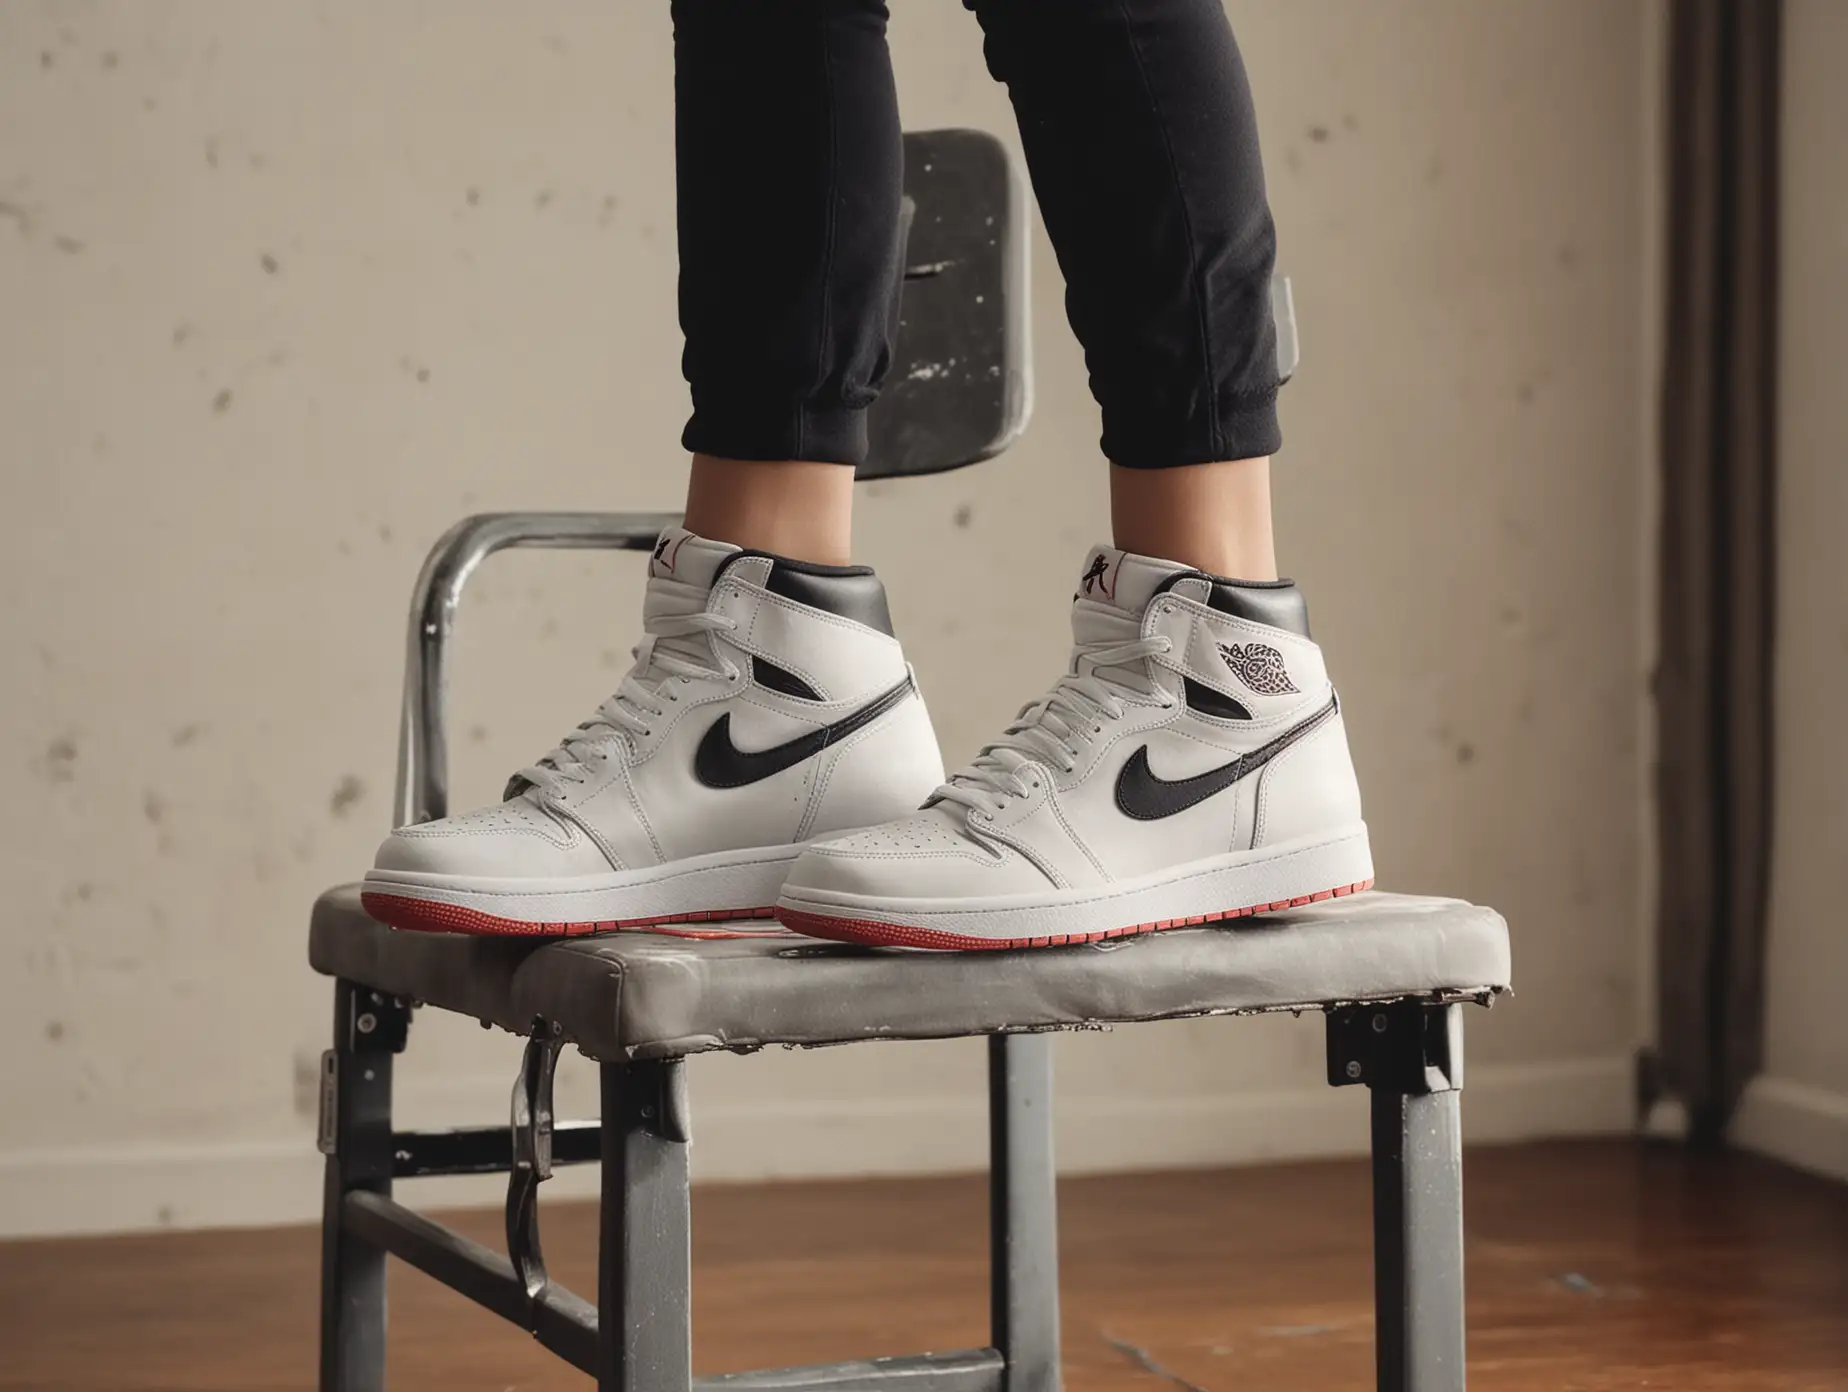 Asian girl's feet in Air Jordan 1 OG High, stomping on a gym chair